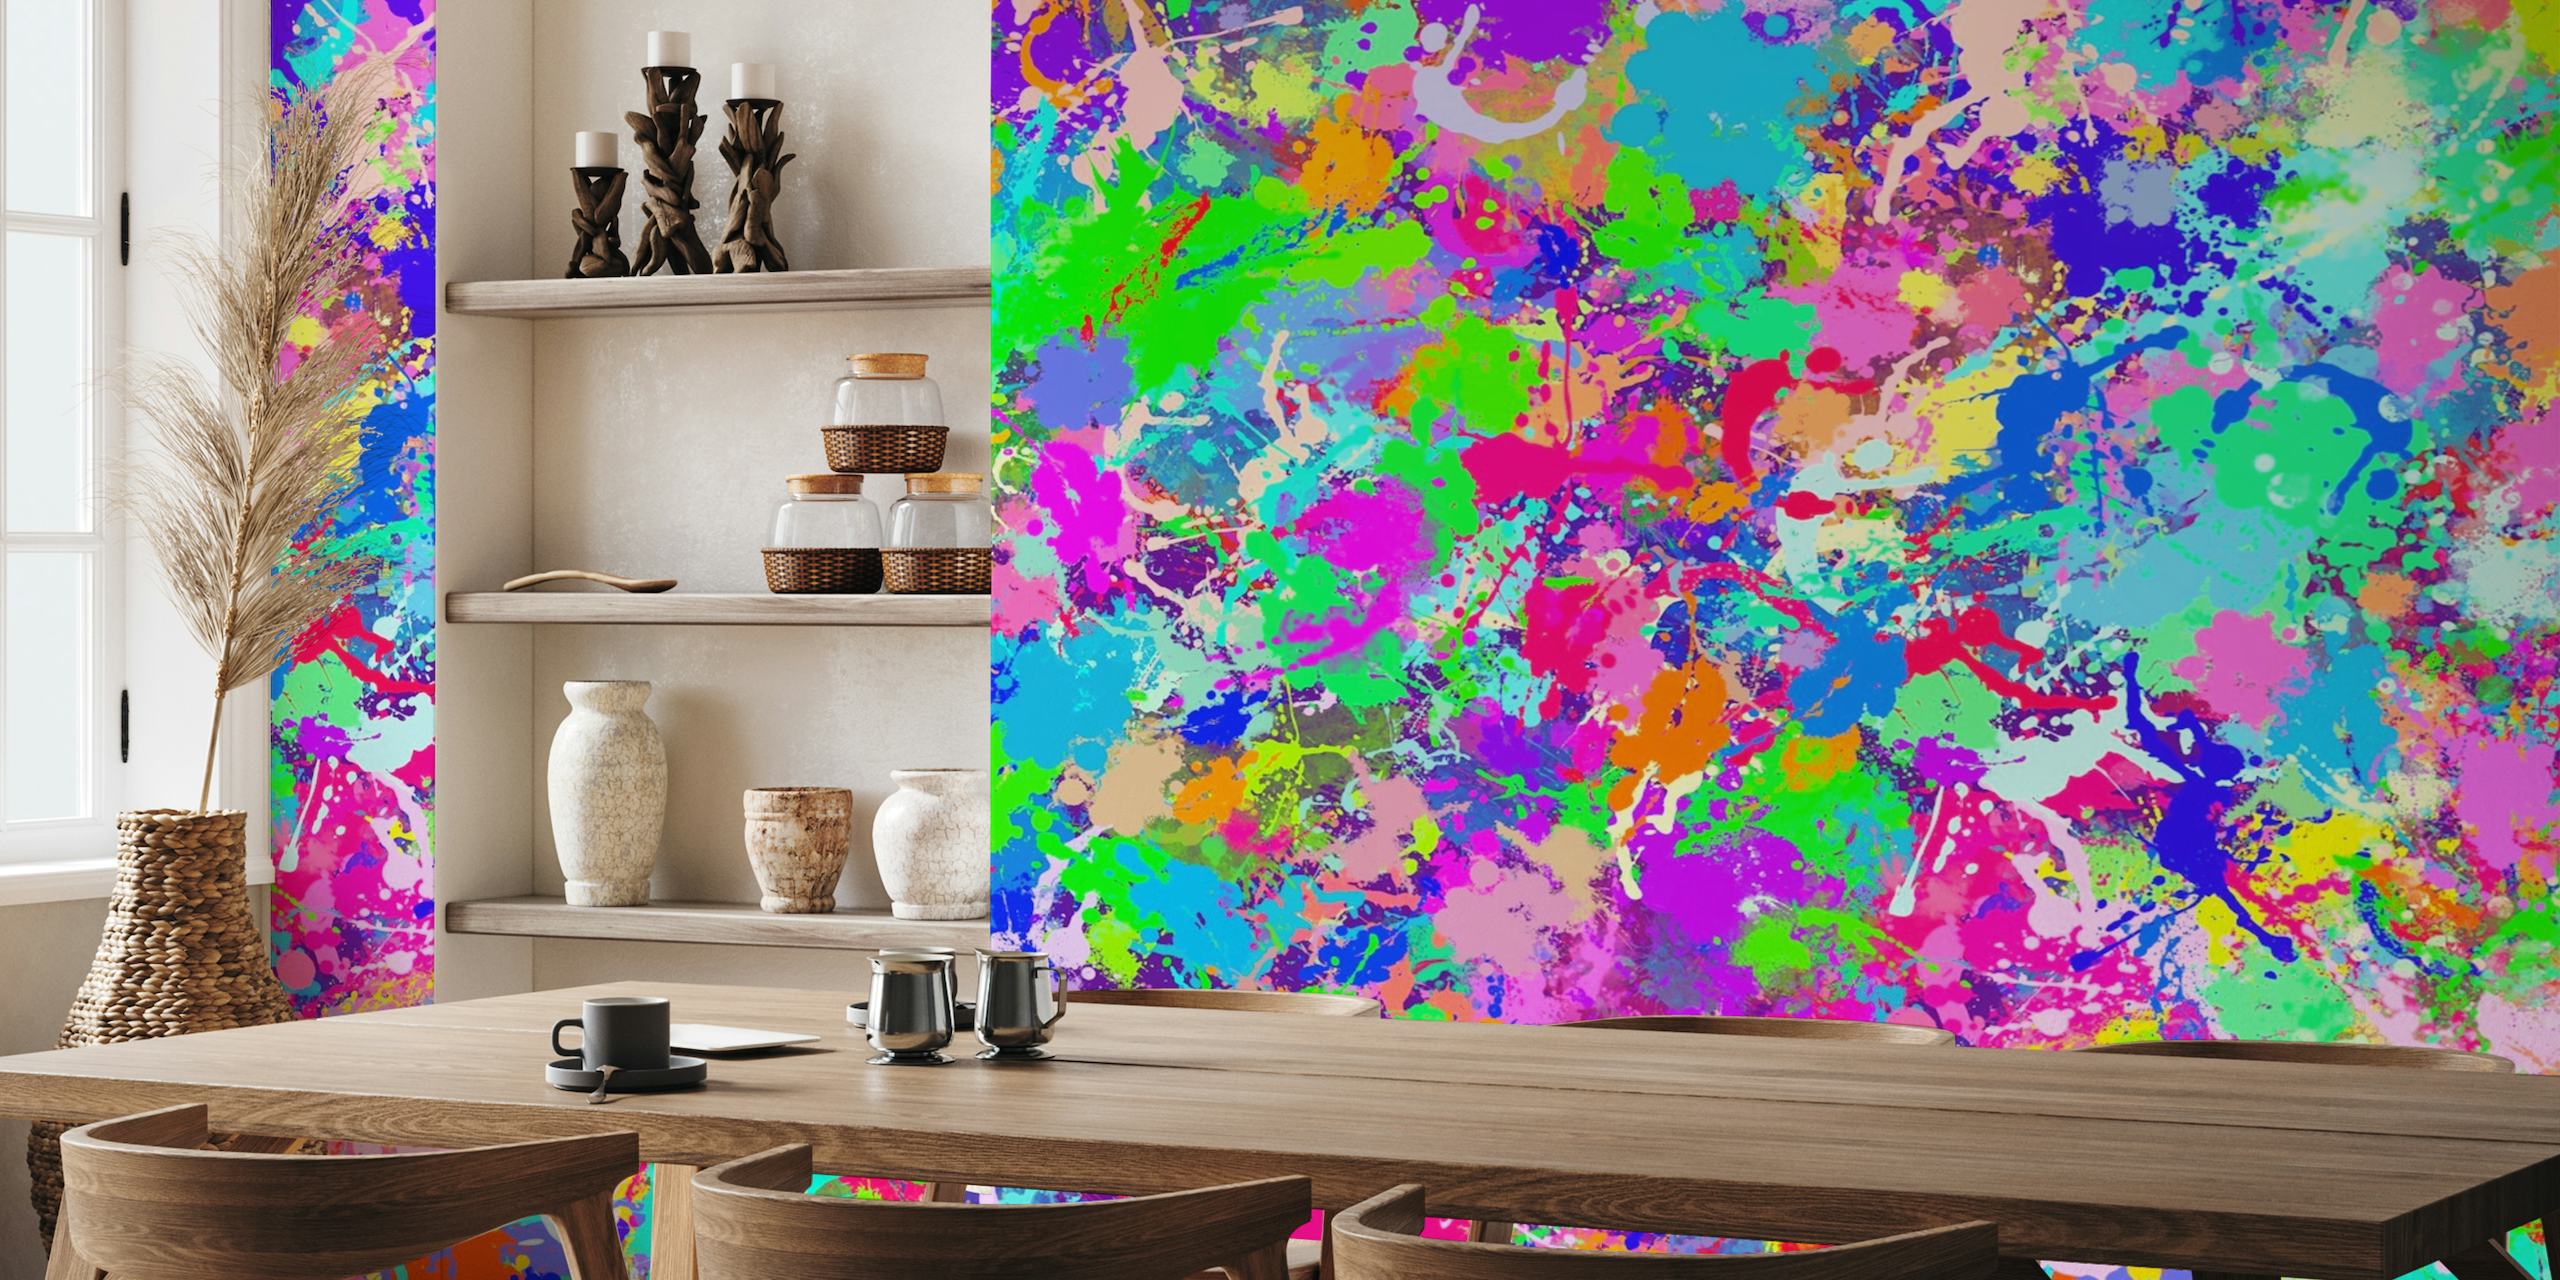 Färgglad abstrakt målarfärgstänk tapet med livfulla nyanser av rosa, blått, grönt och gult